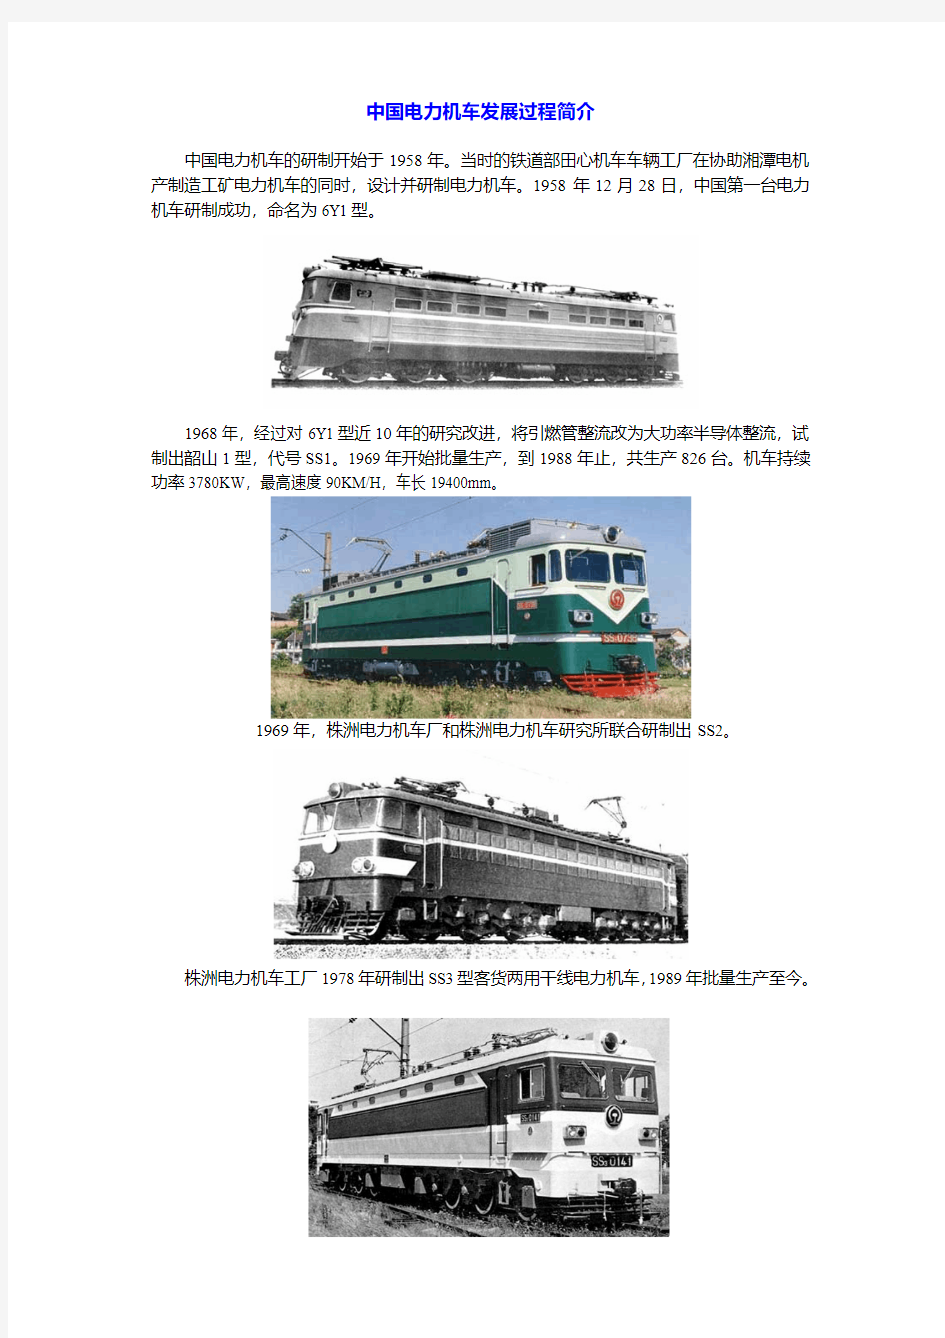 中国铁路机车发展史(电力机车)